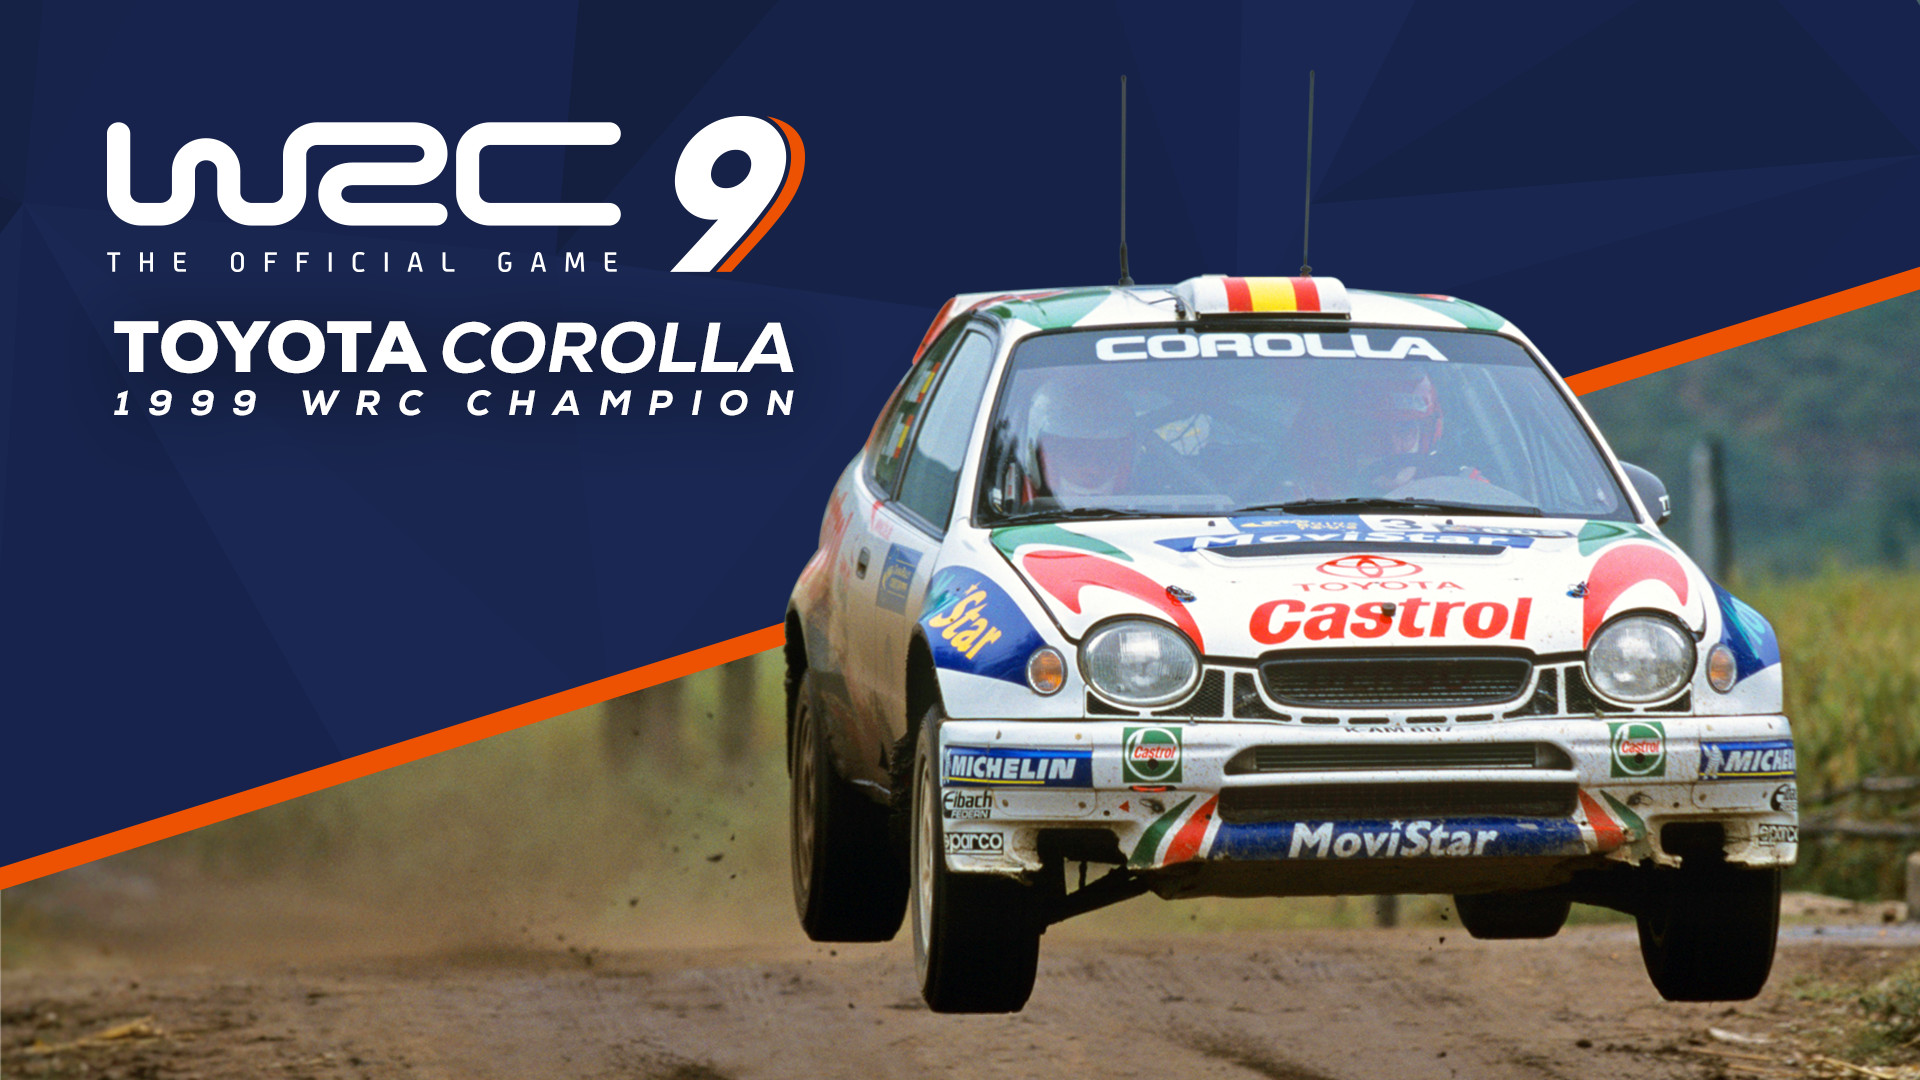 WRC 9 - Toyota Corolla 1999 DLC Steam CD Key [USD 1.94]